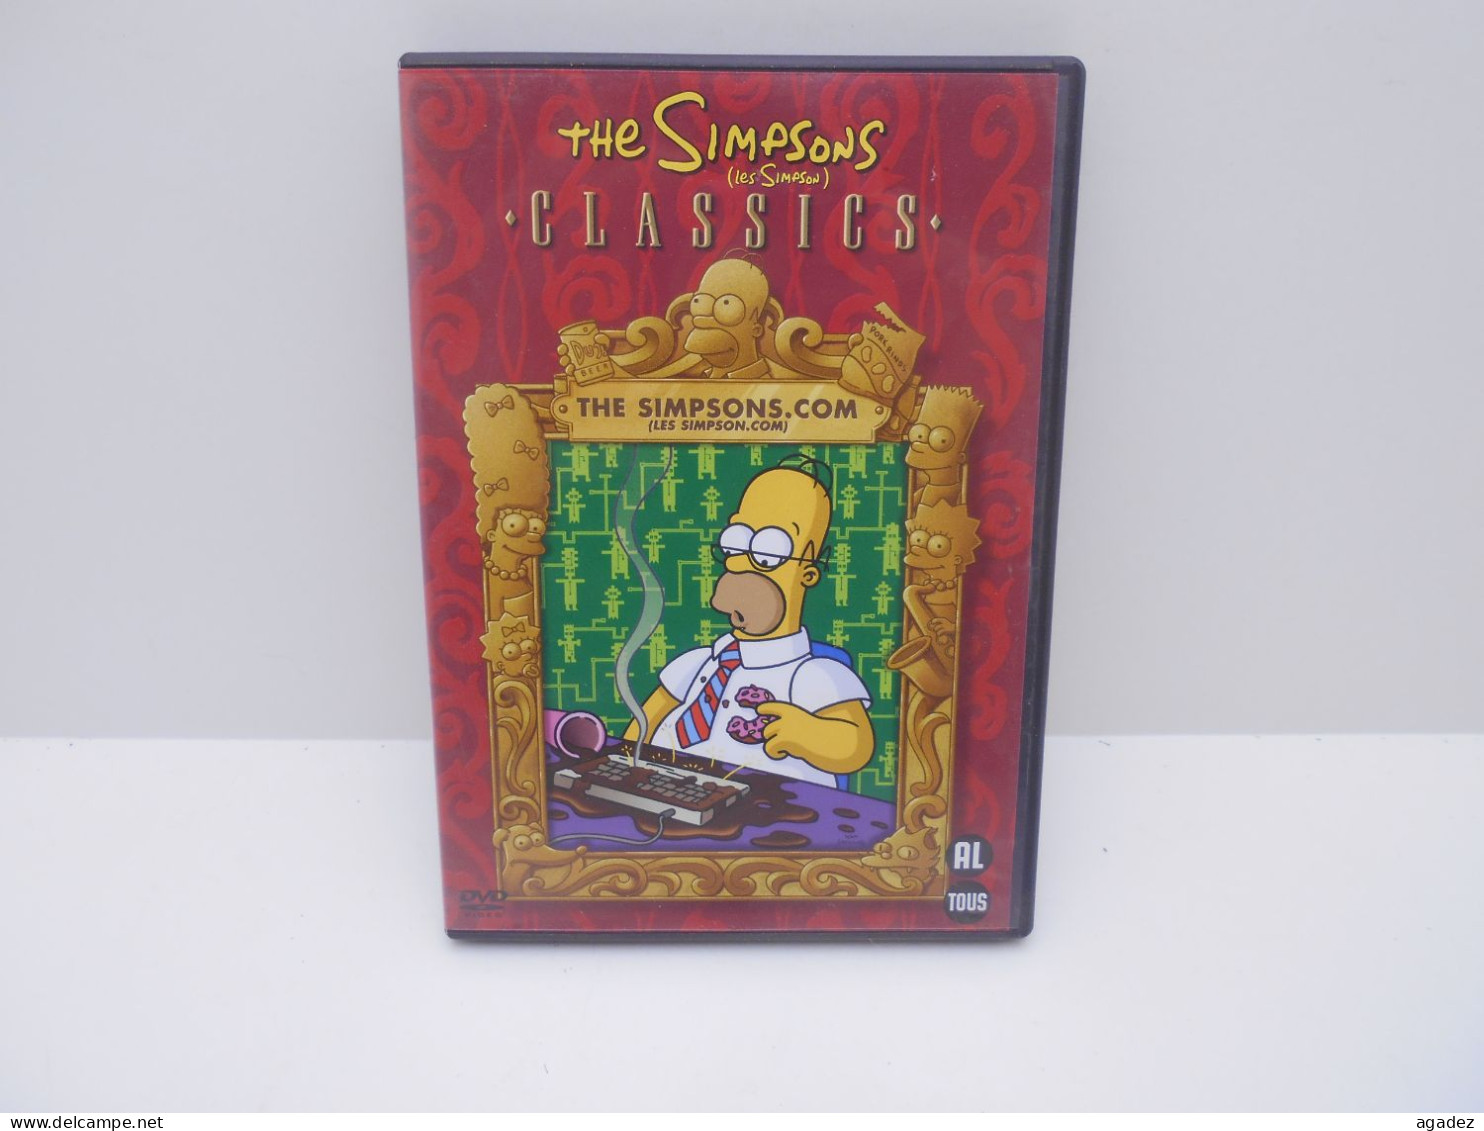 DVD The Simpsons Classics  The Simpsons.com - Familiari